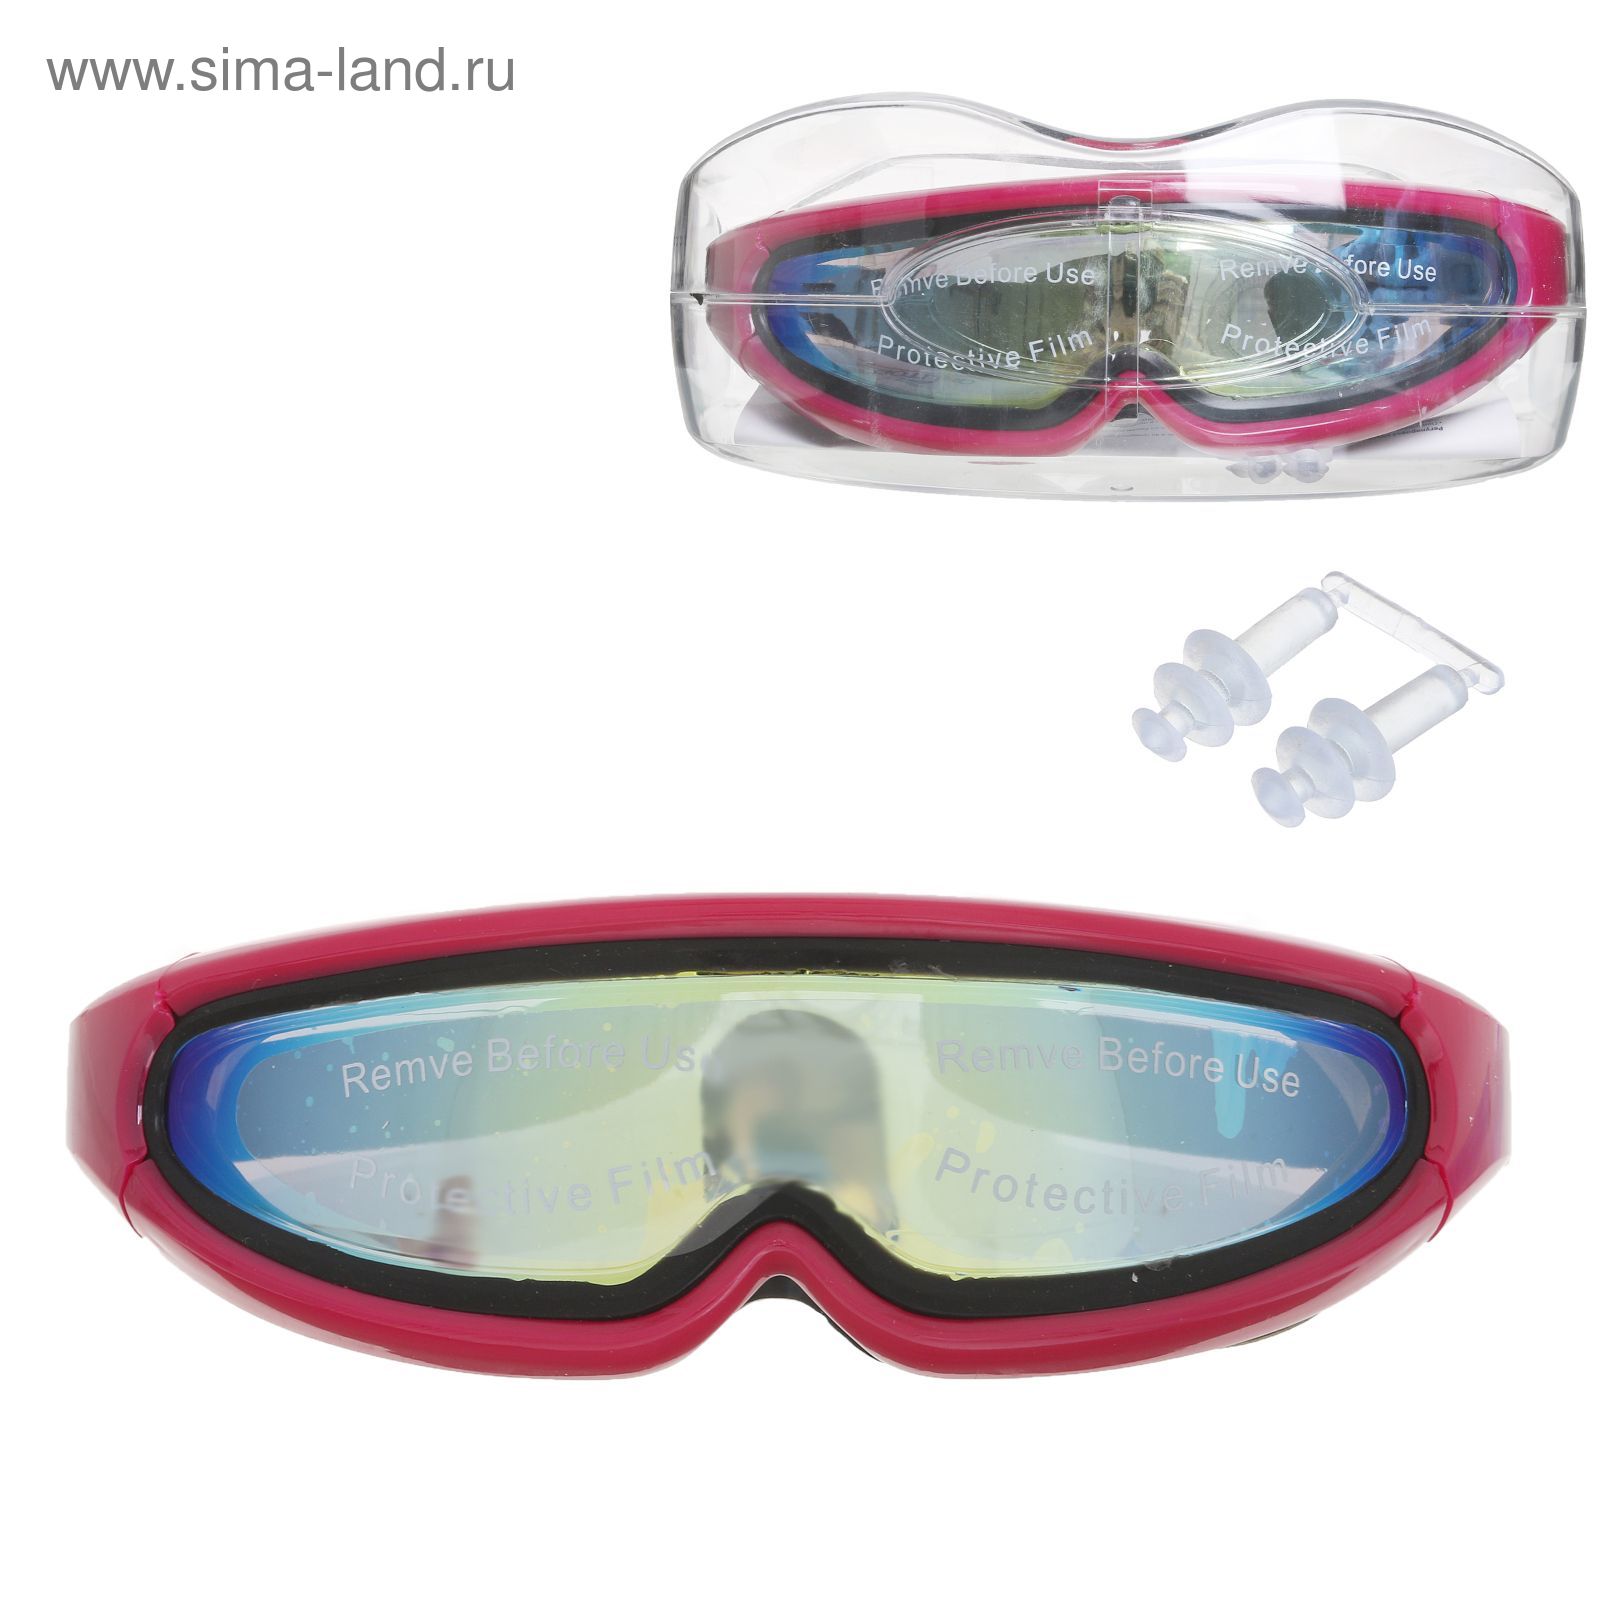 Очки для плавания, взрослые SS37, цвета микс